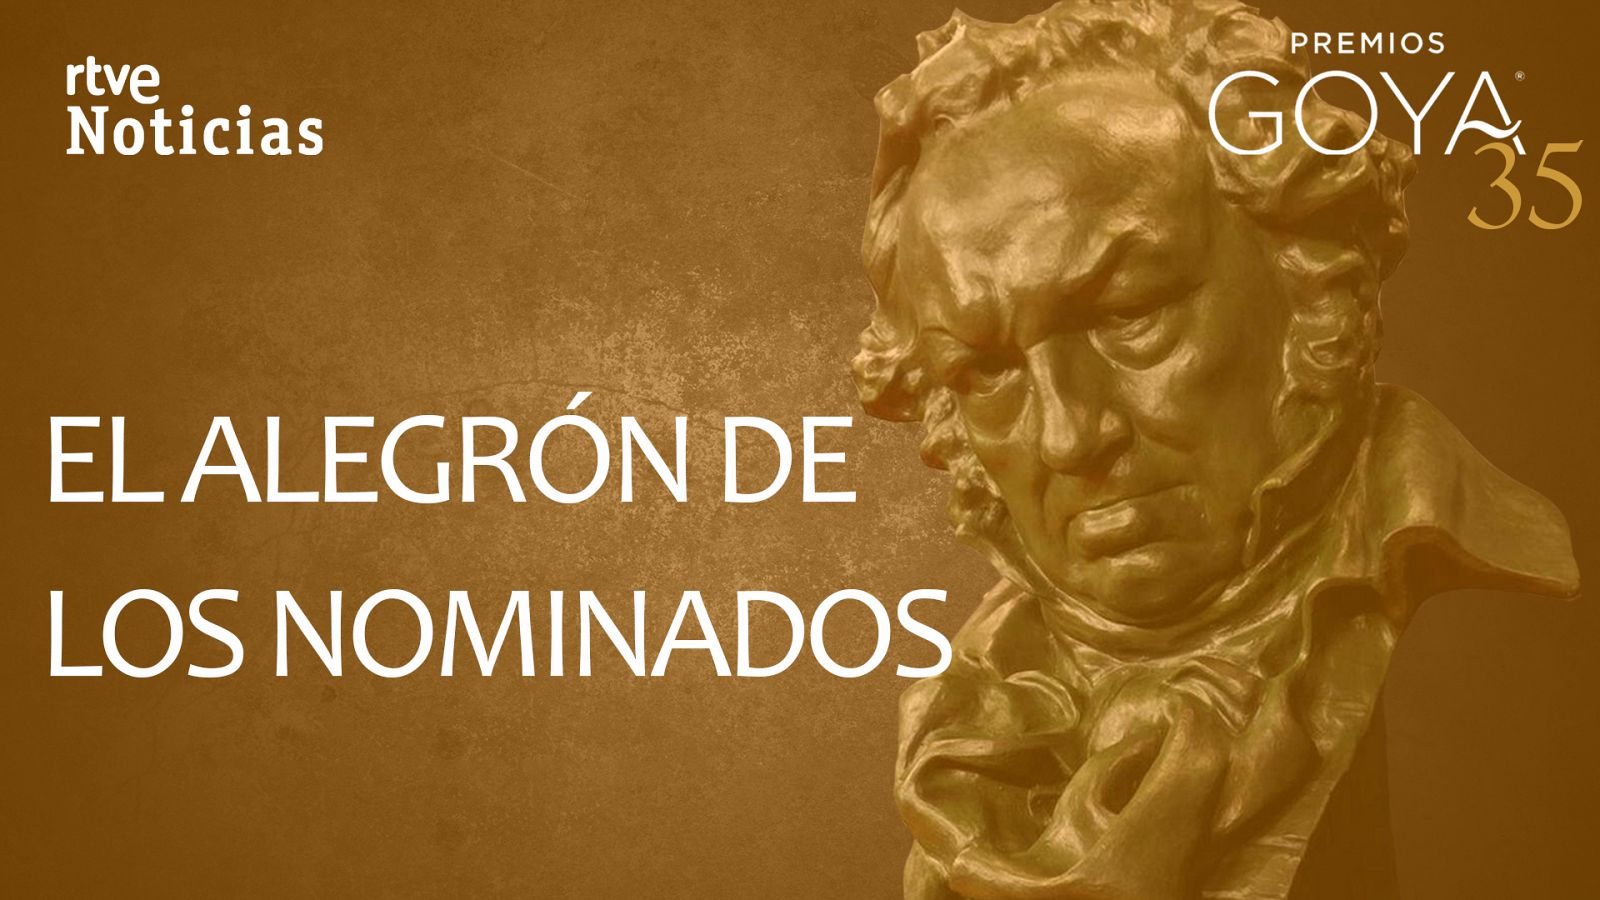 Los nominados a los Goya 2021 celebran su candidatura - RTVE.es